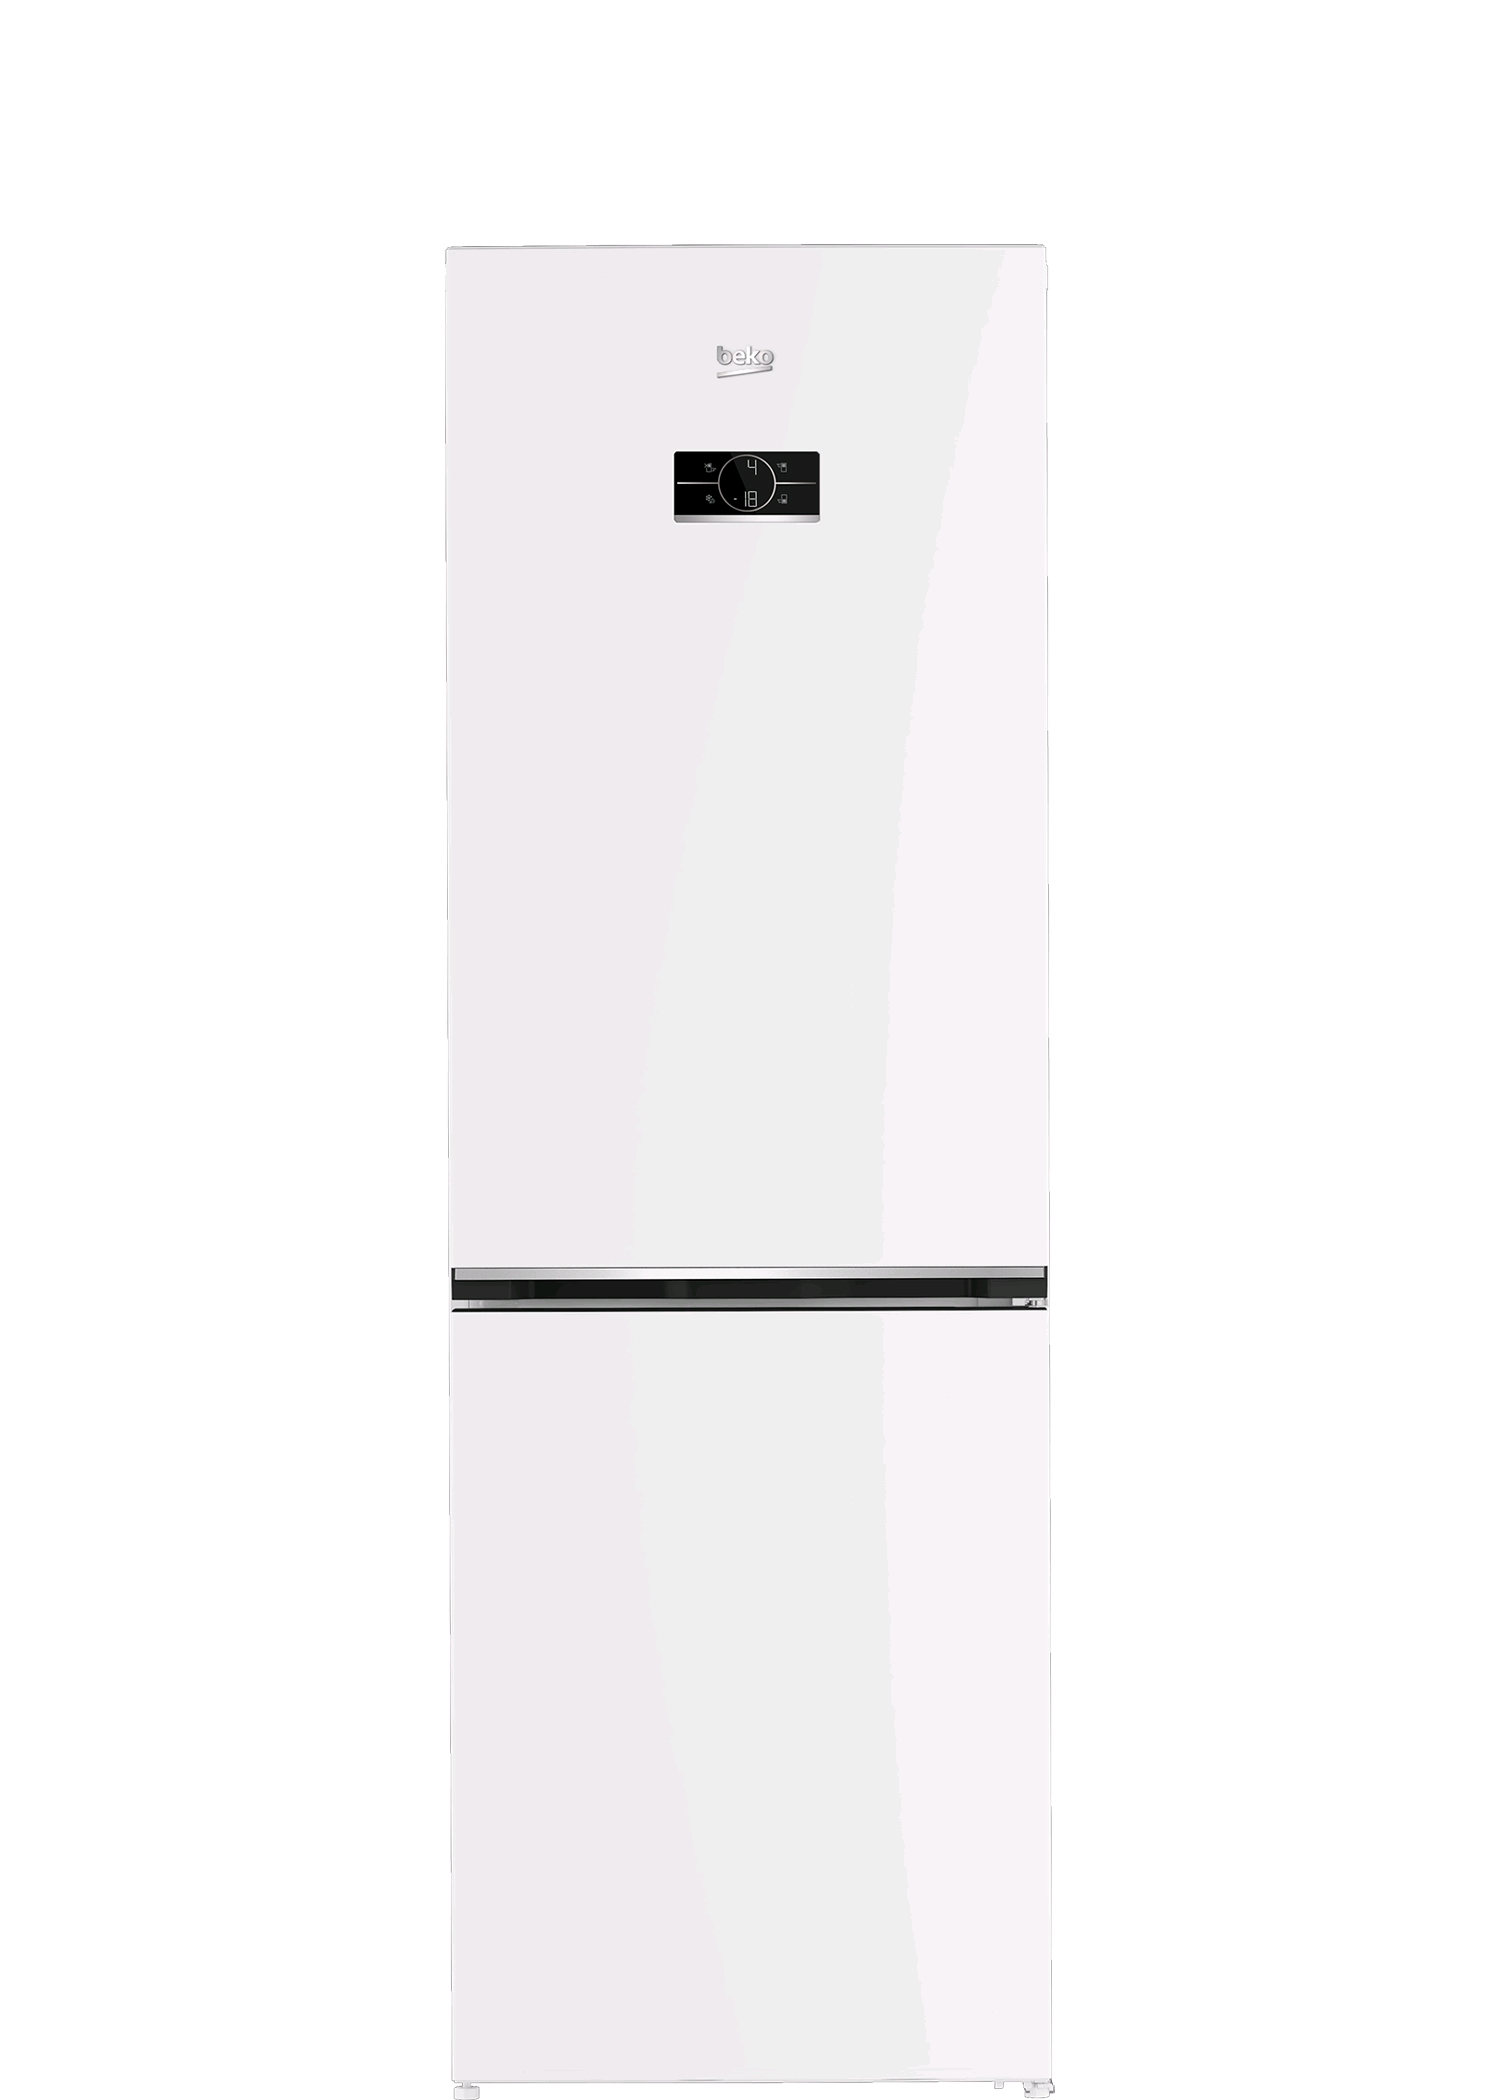 Beko B3DRCNK362HW холодильник